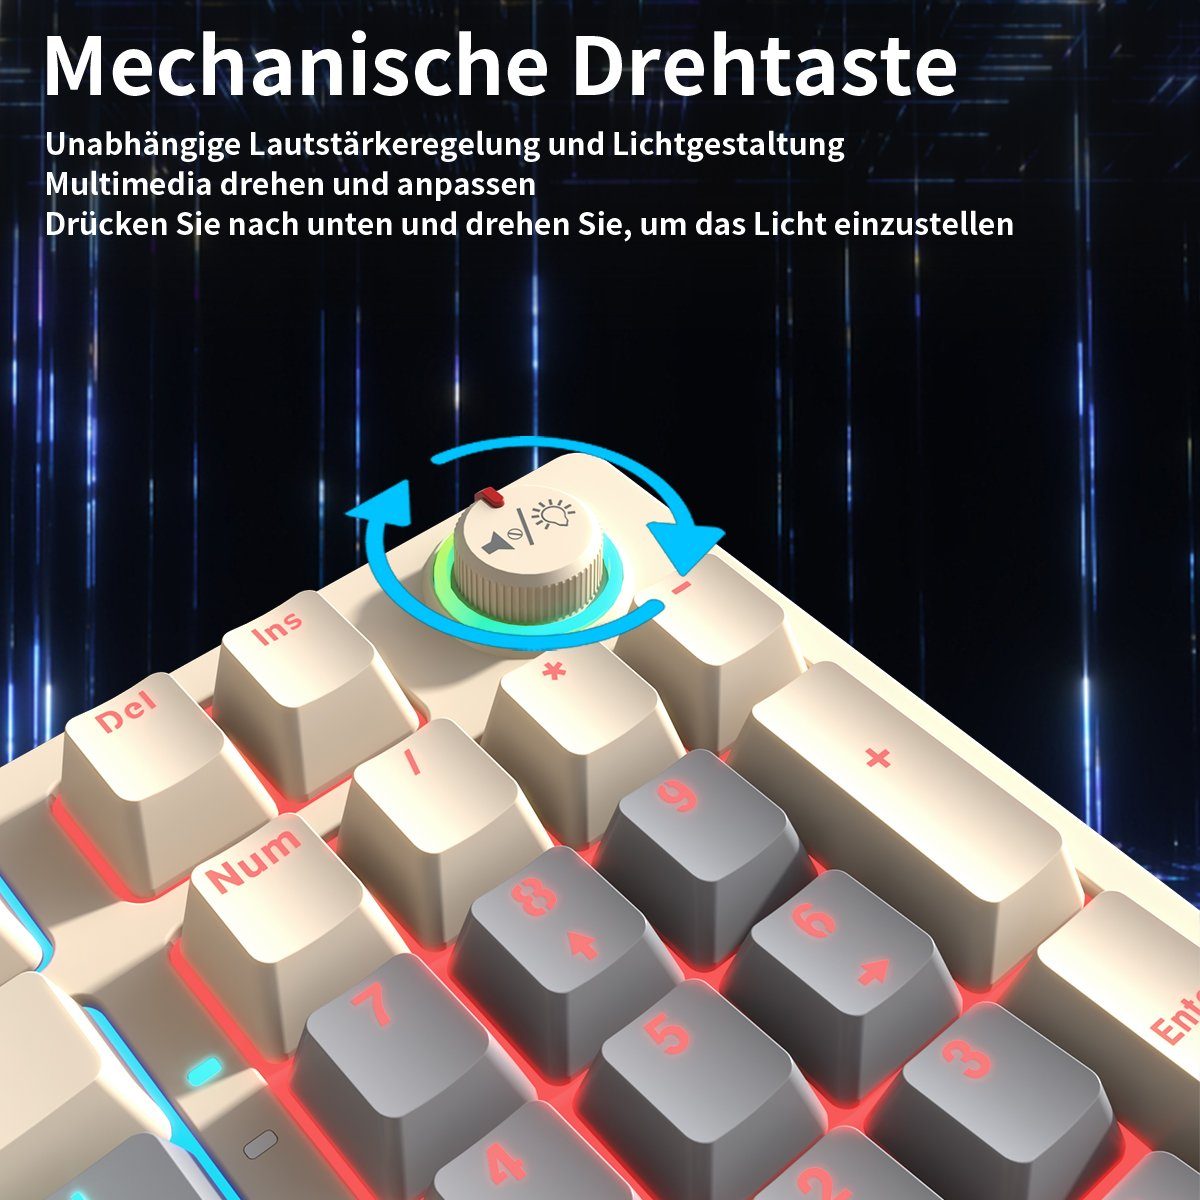 BUMHUM Nicht Echte deutsche Dreifarbige RGB-Gaming-Tastatur (Zweifarbige mit Gaming-Tastatur Tastatur,RGB-Beleuchtung Weiß und Kabe) Doppel- mechanische Tastatur